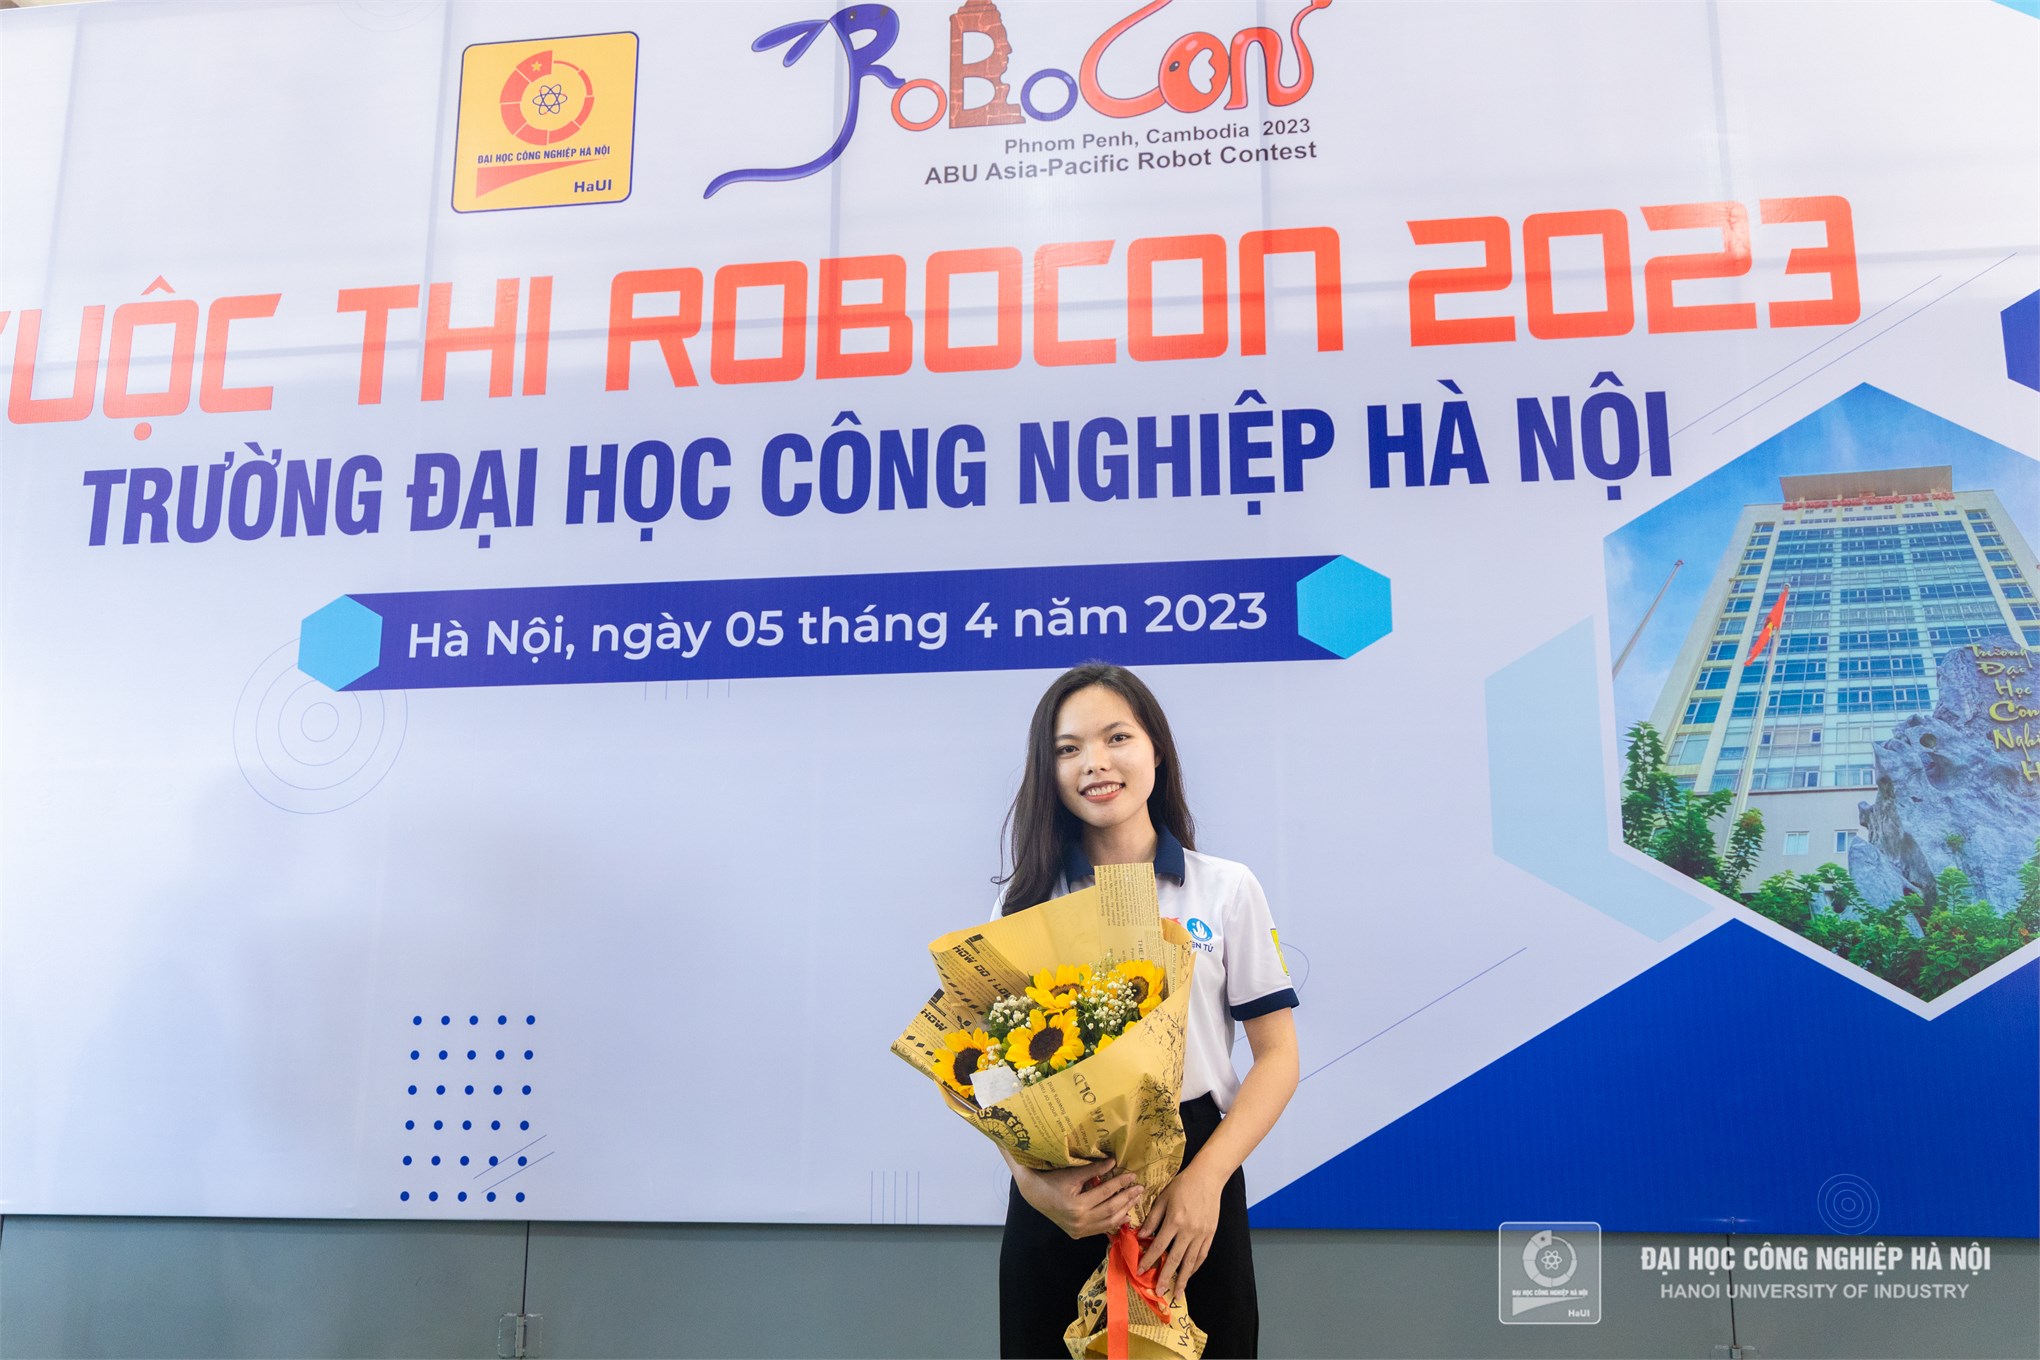 Đội ĐT2-HaUI khoa Điện tử vô địch Robocon cấp trường năm 2023